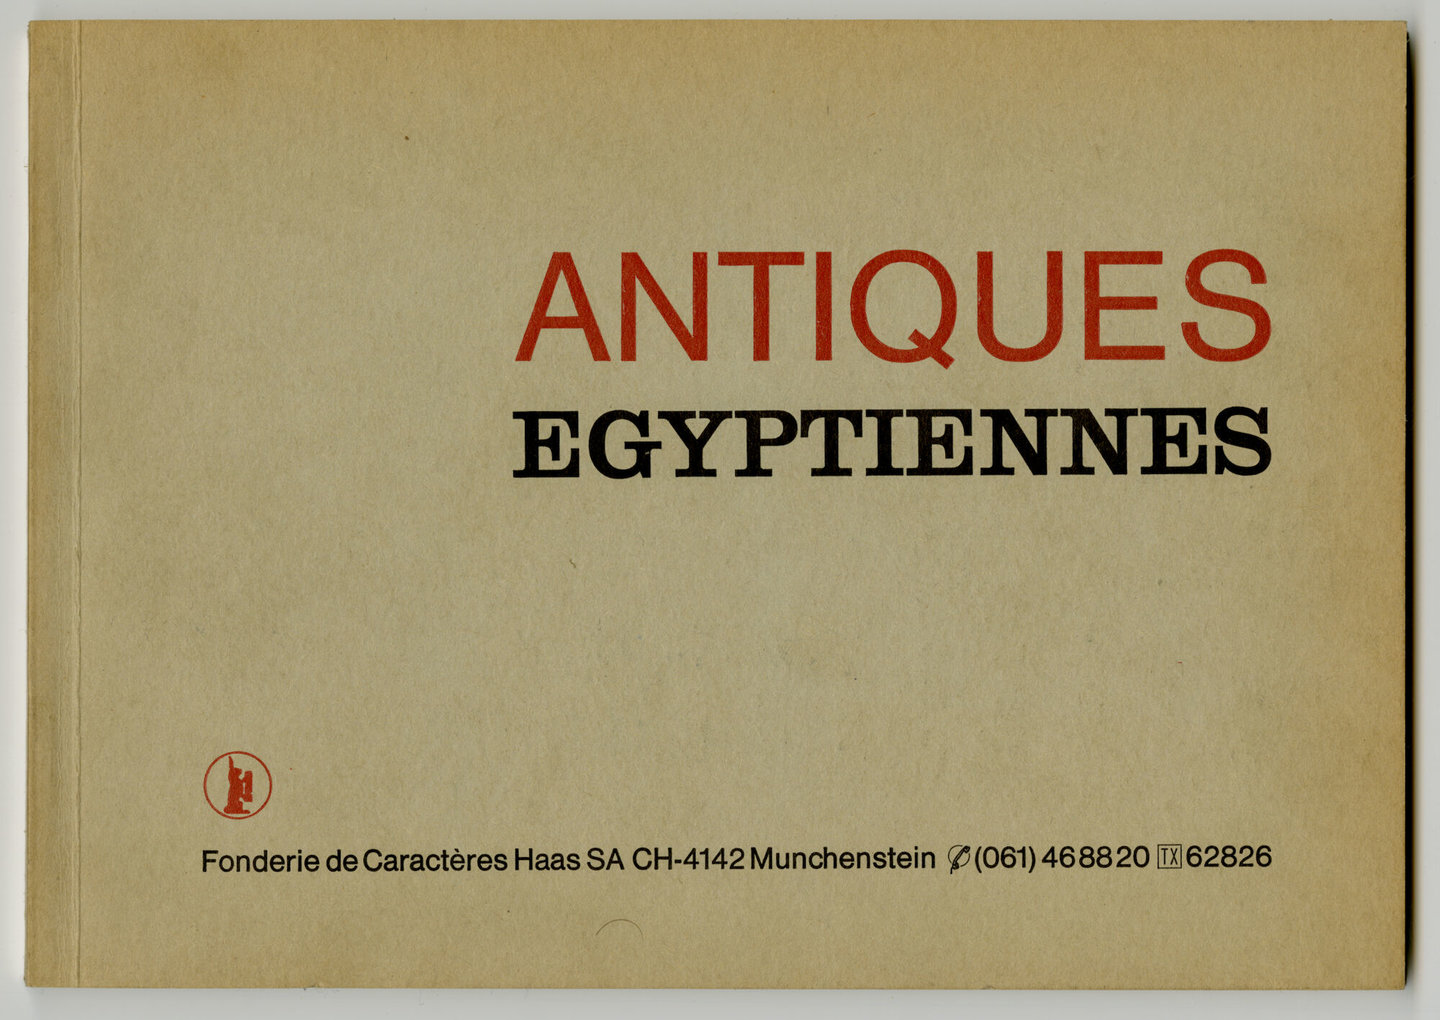 Letterproef met lettertypes van de familie Antiques Egyptiennes